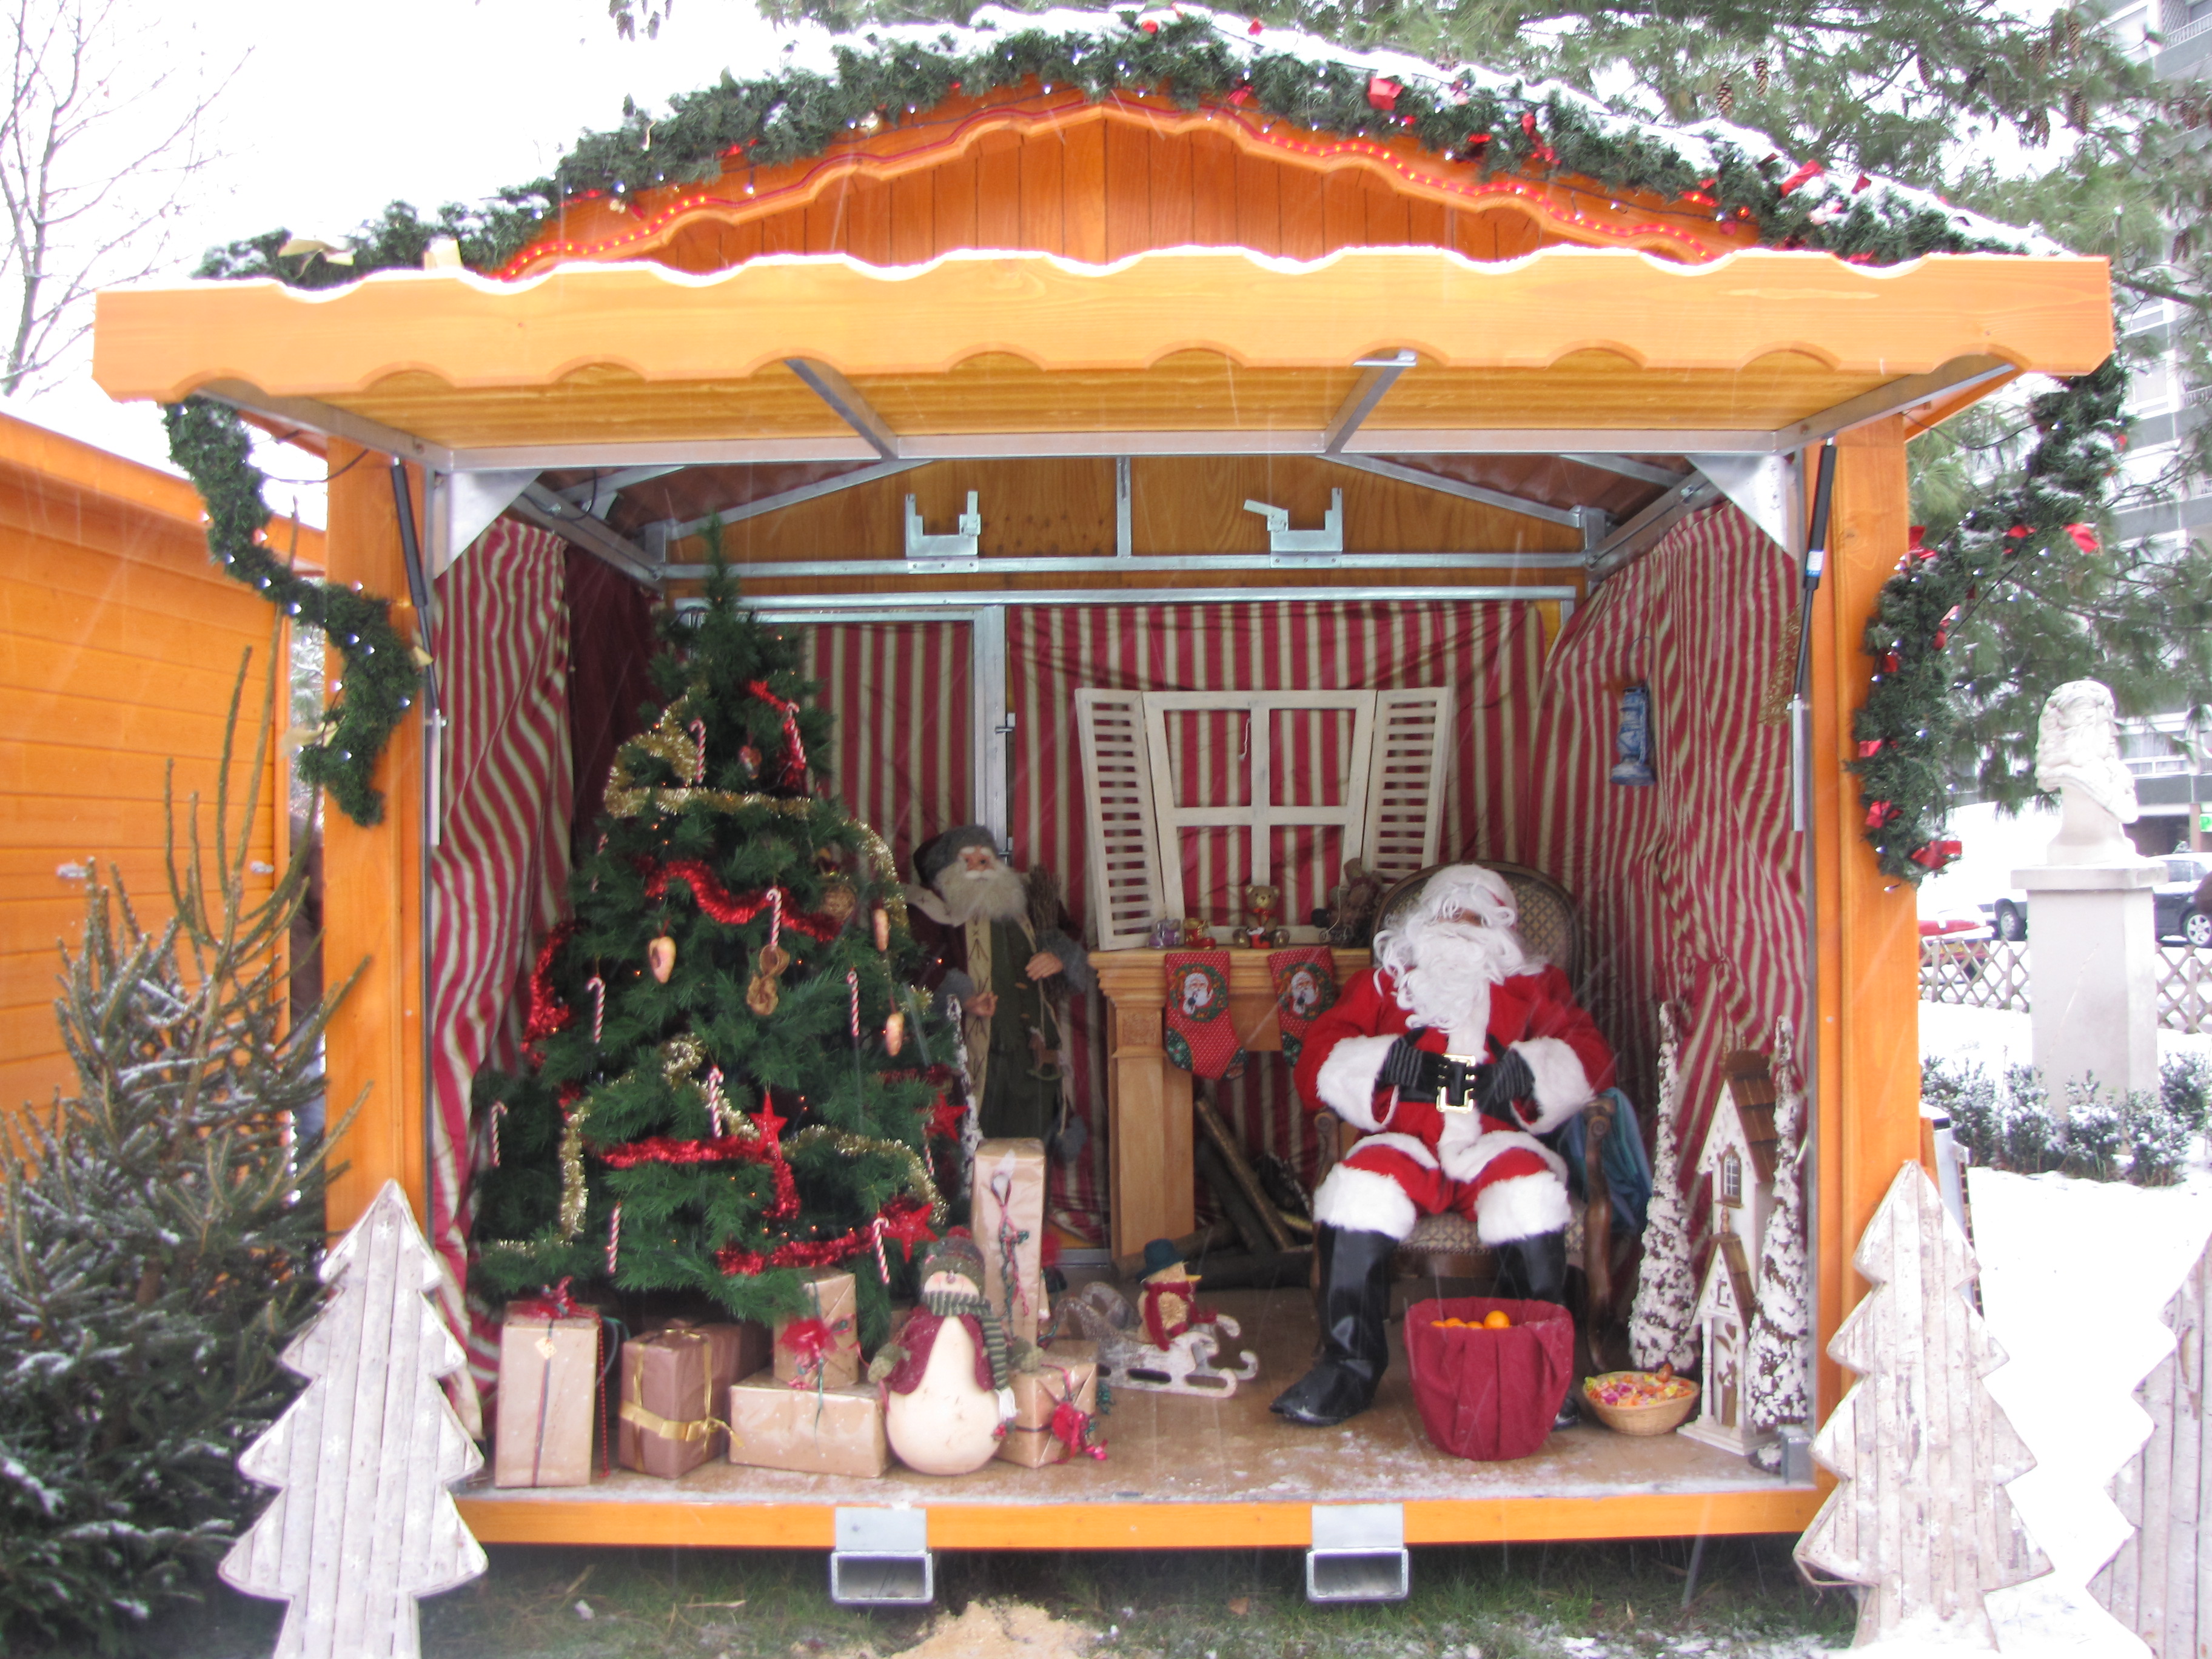 Village Noel miniature, chalet marché de Noel vendeur de jouets